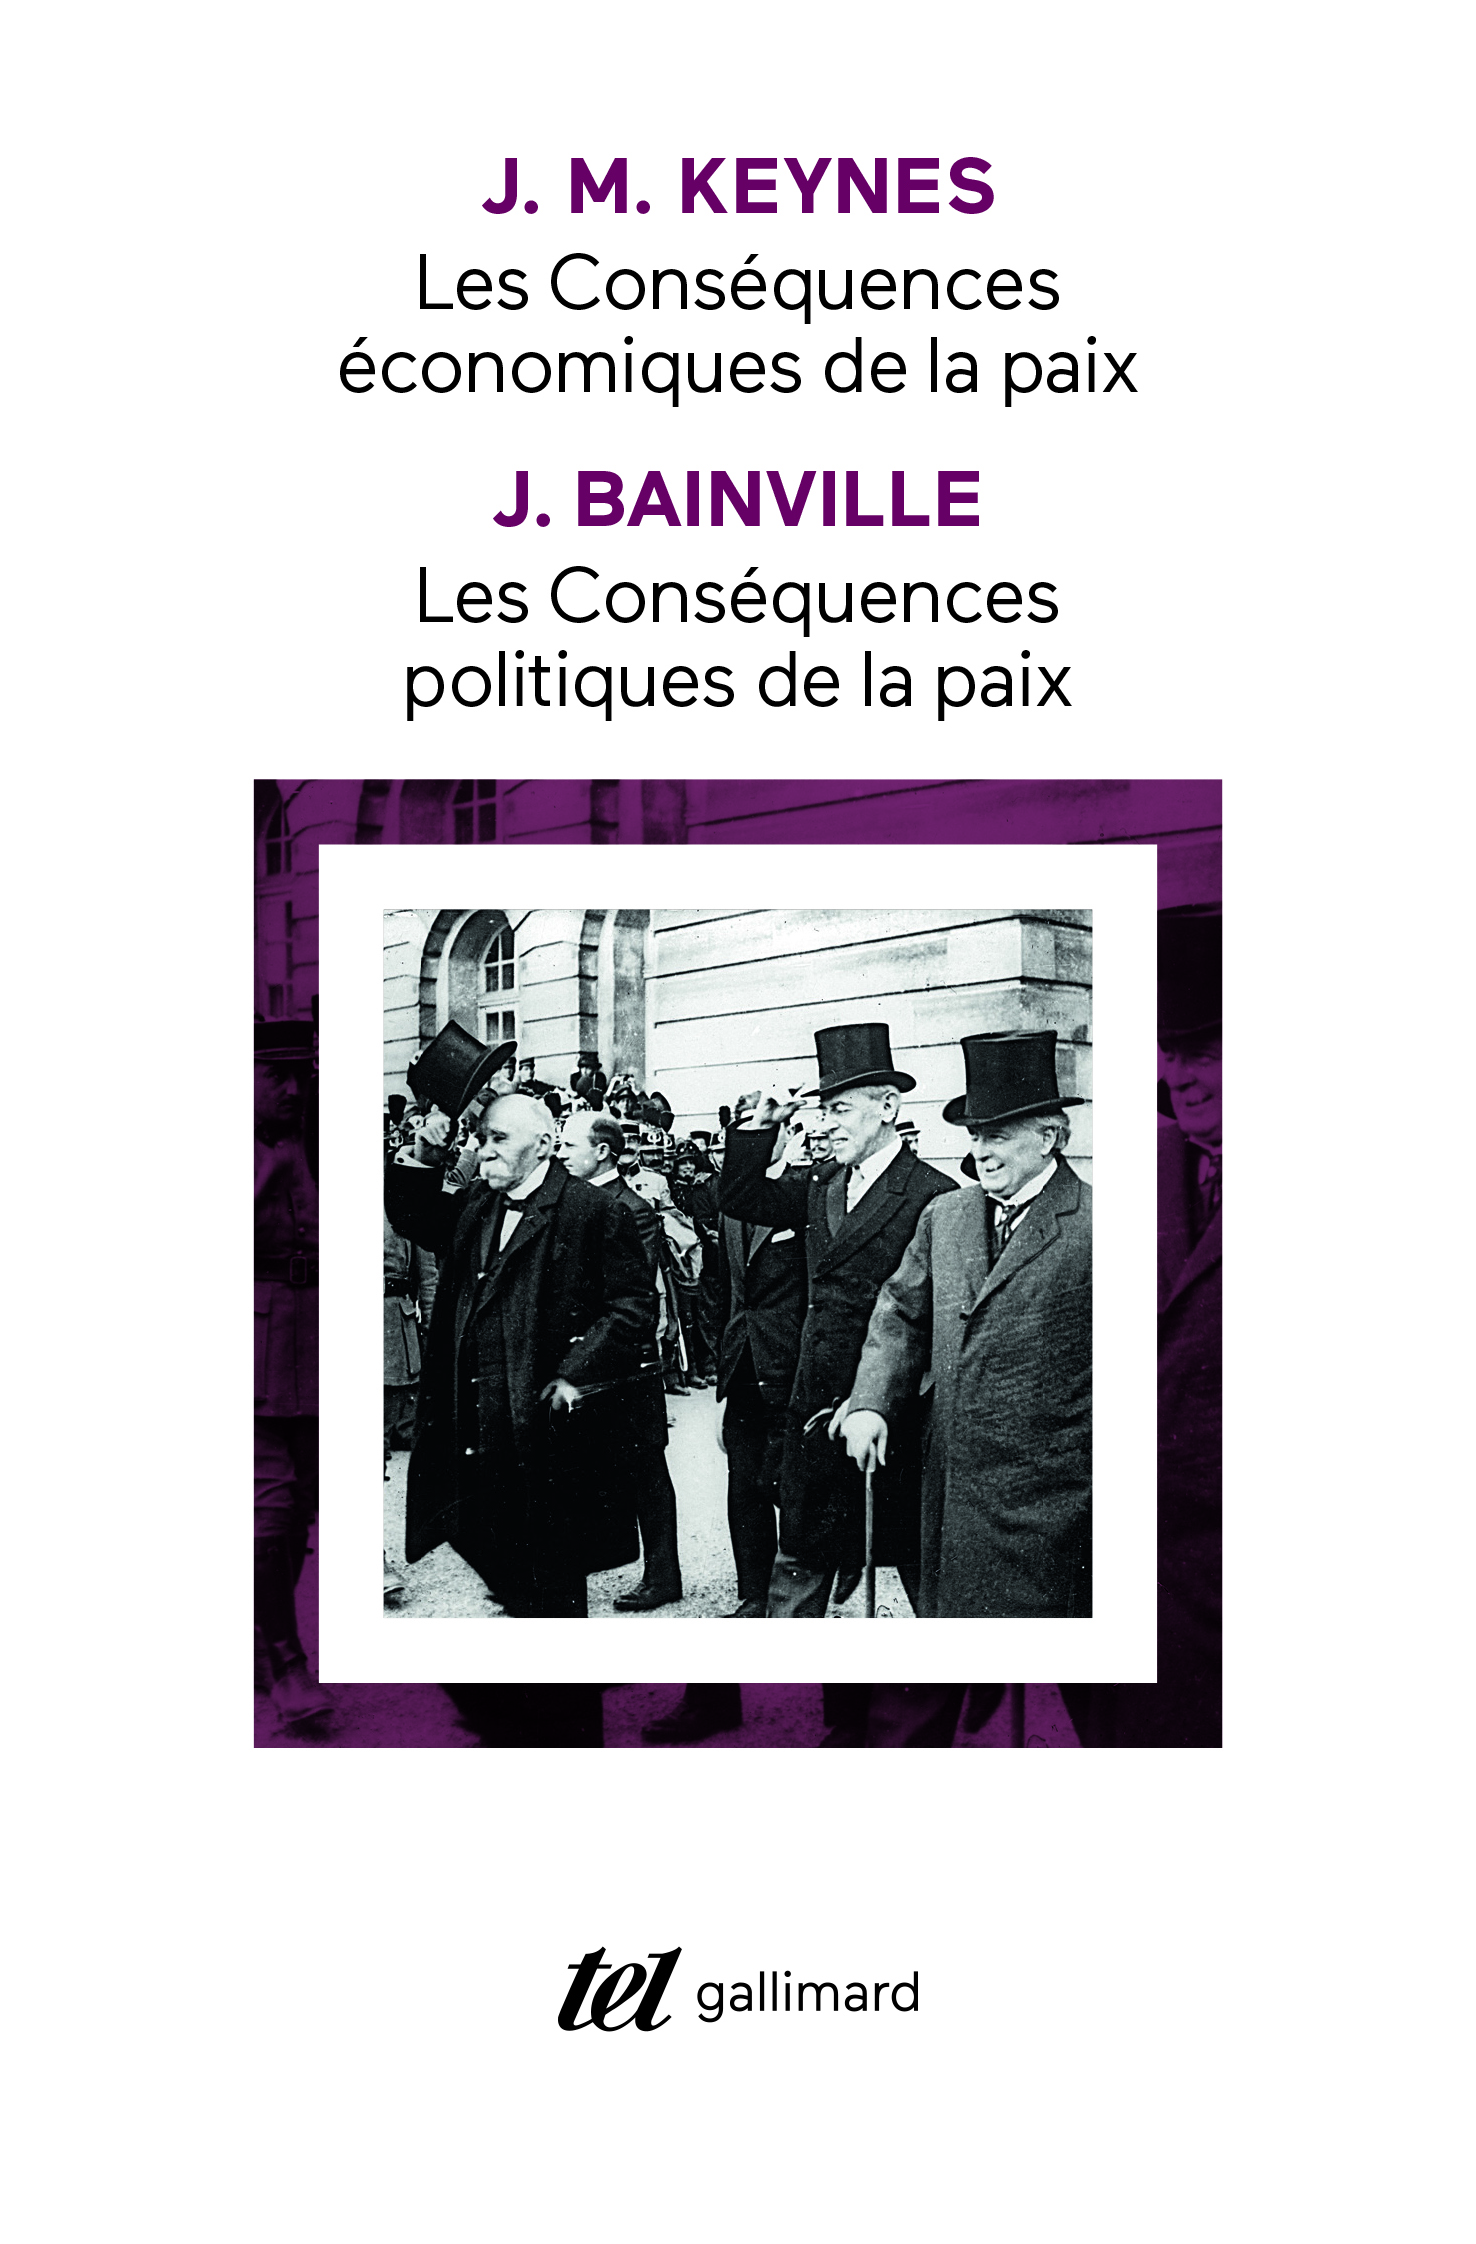 Les conséquences politiques de la paix (J. Bainville) - Les conséquences économiques de la paix (J. M. Keynes) (9782070764846-front-cover)